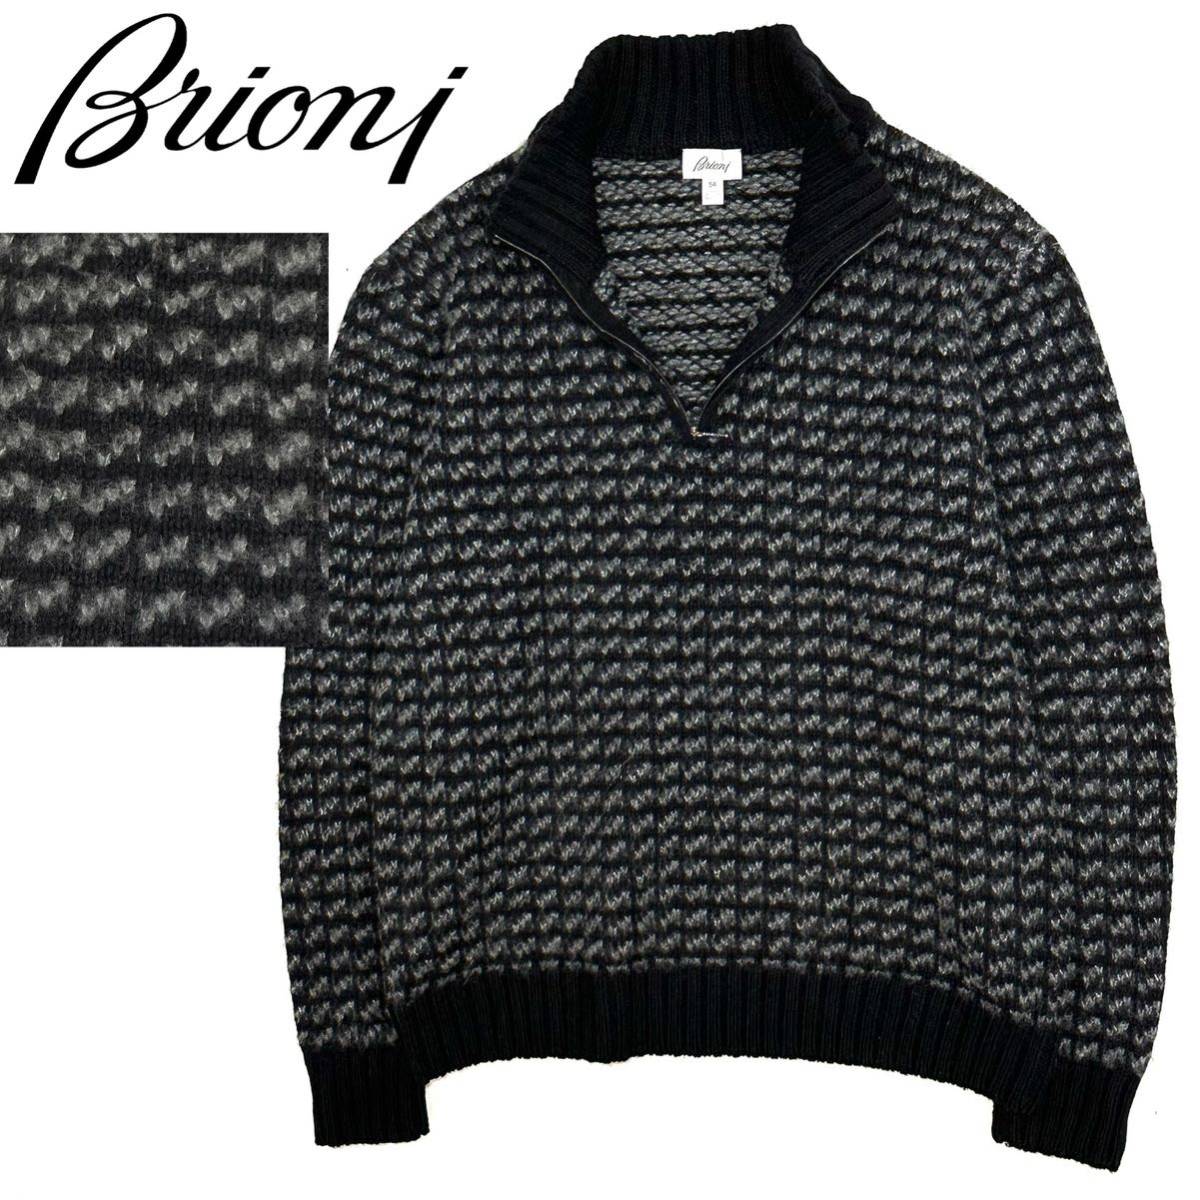 良品!イタリア製 Brioni ブリオーニ 肉厚 カシミヤ アルパカ シルク ハーフジップ バーズアイ 高級 ニットセーター(54)ブラック×グレー